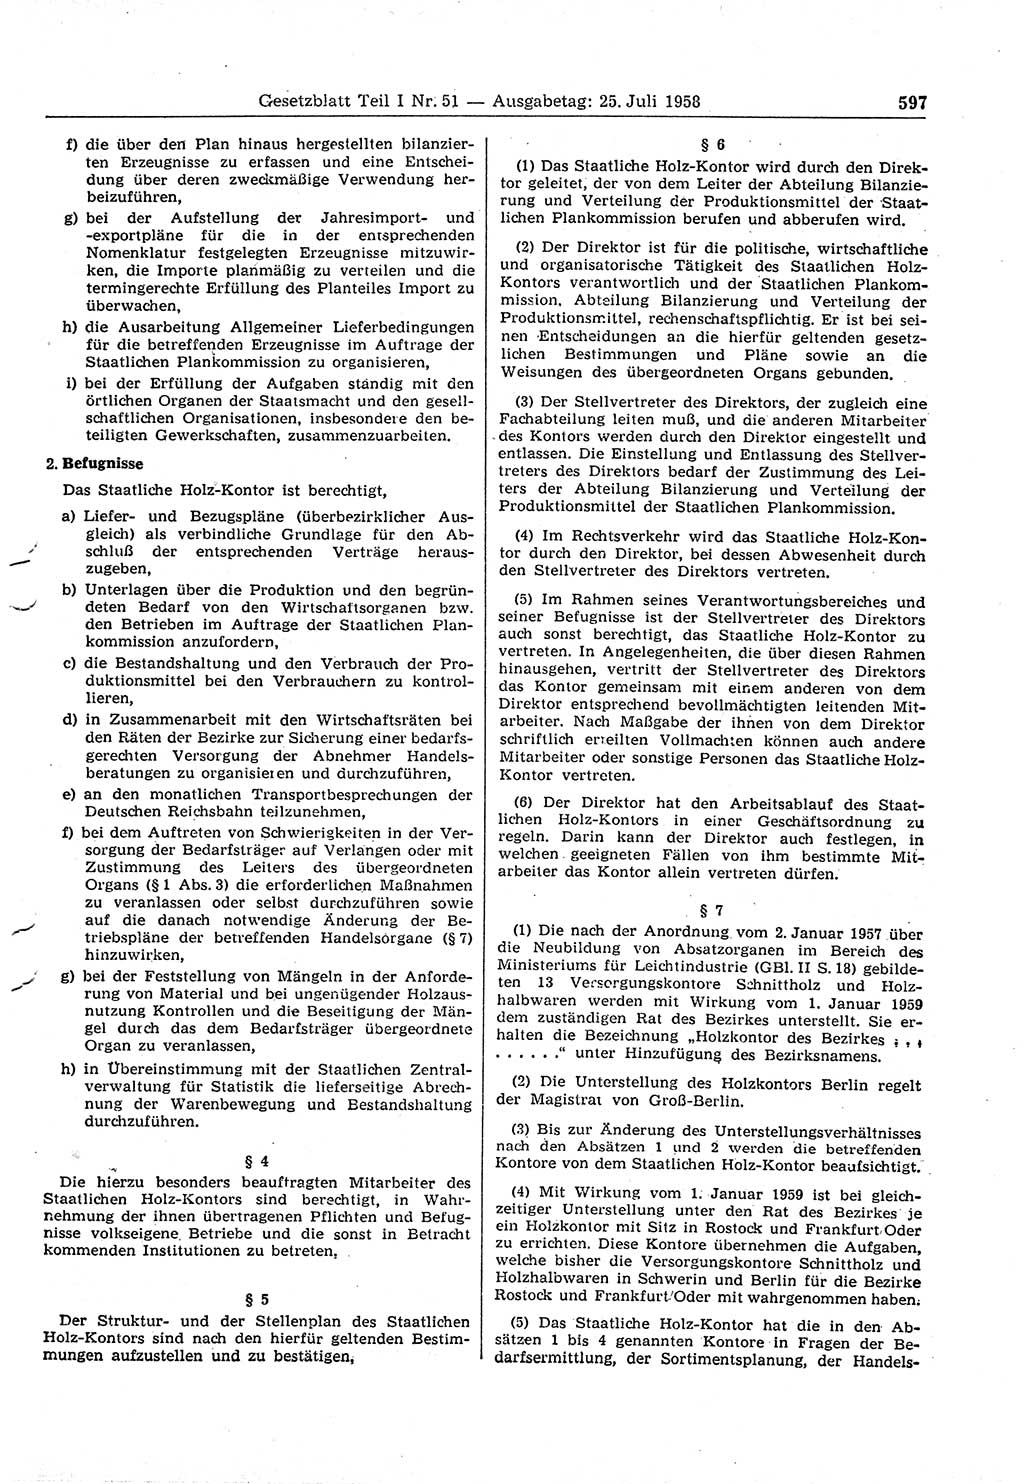 Gesetzblatt (GBl.) der Deutschen Demokratischen Republik (DDR) Teil Ⅰ 1958, Seite 597 (GBl. DDR Ⅰ 1958, S. 597)